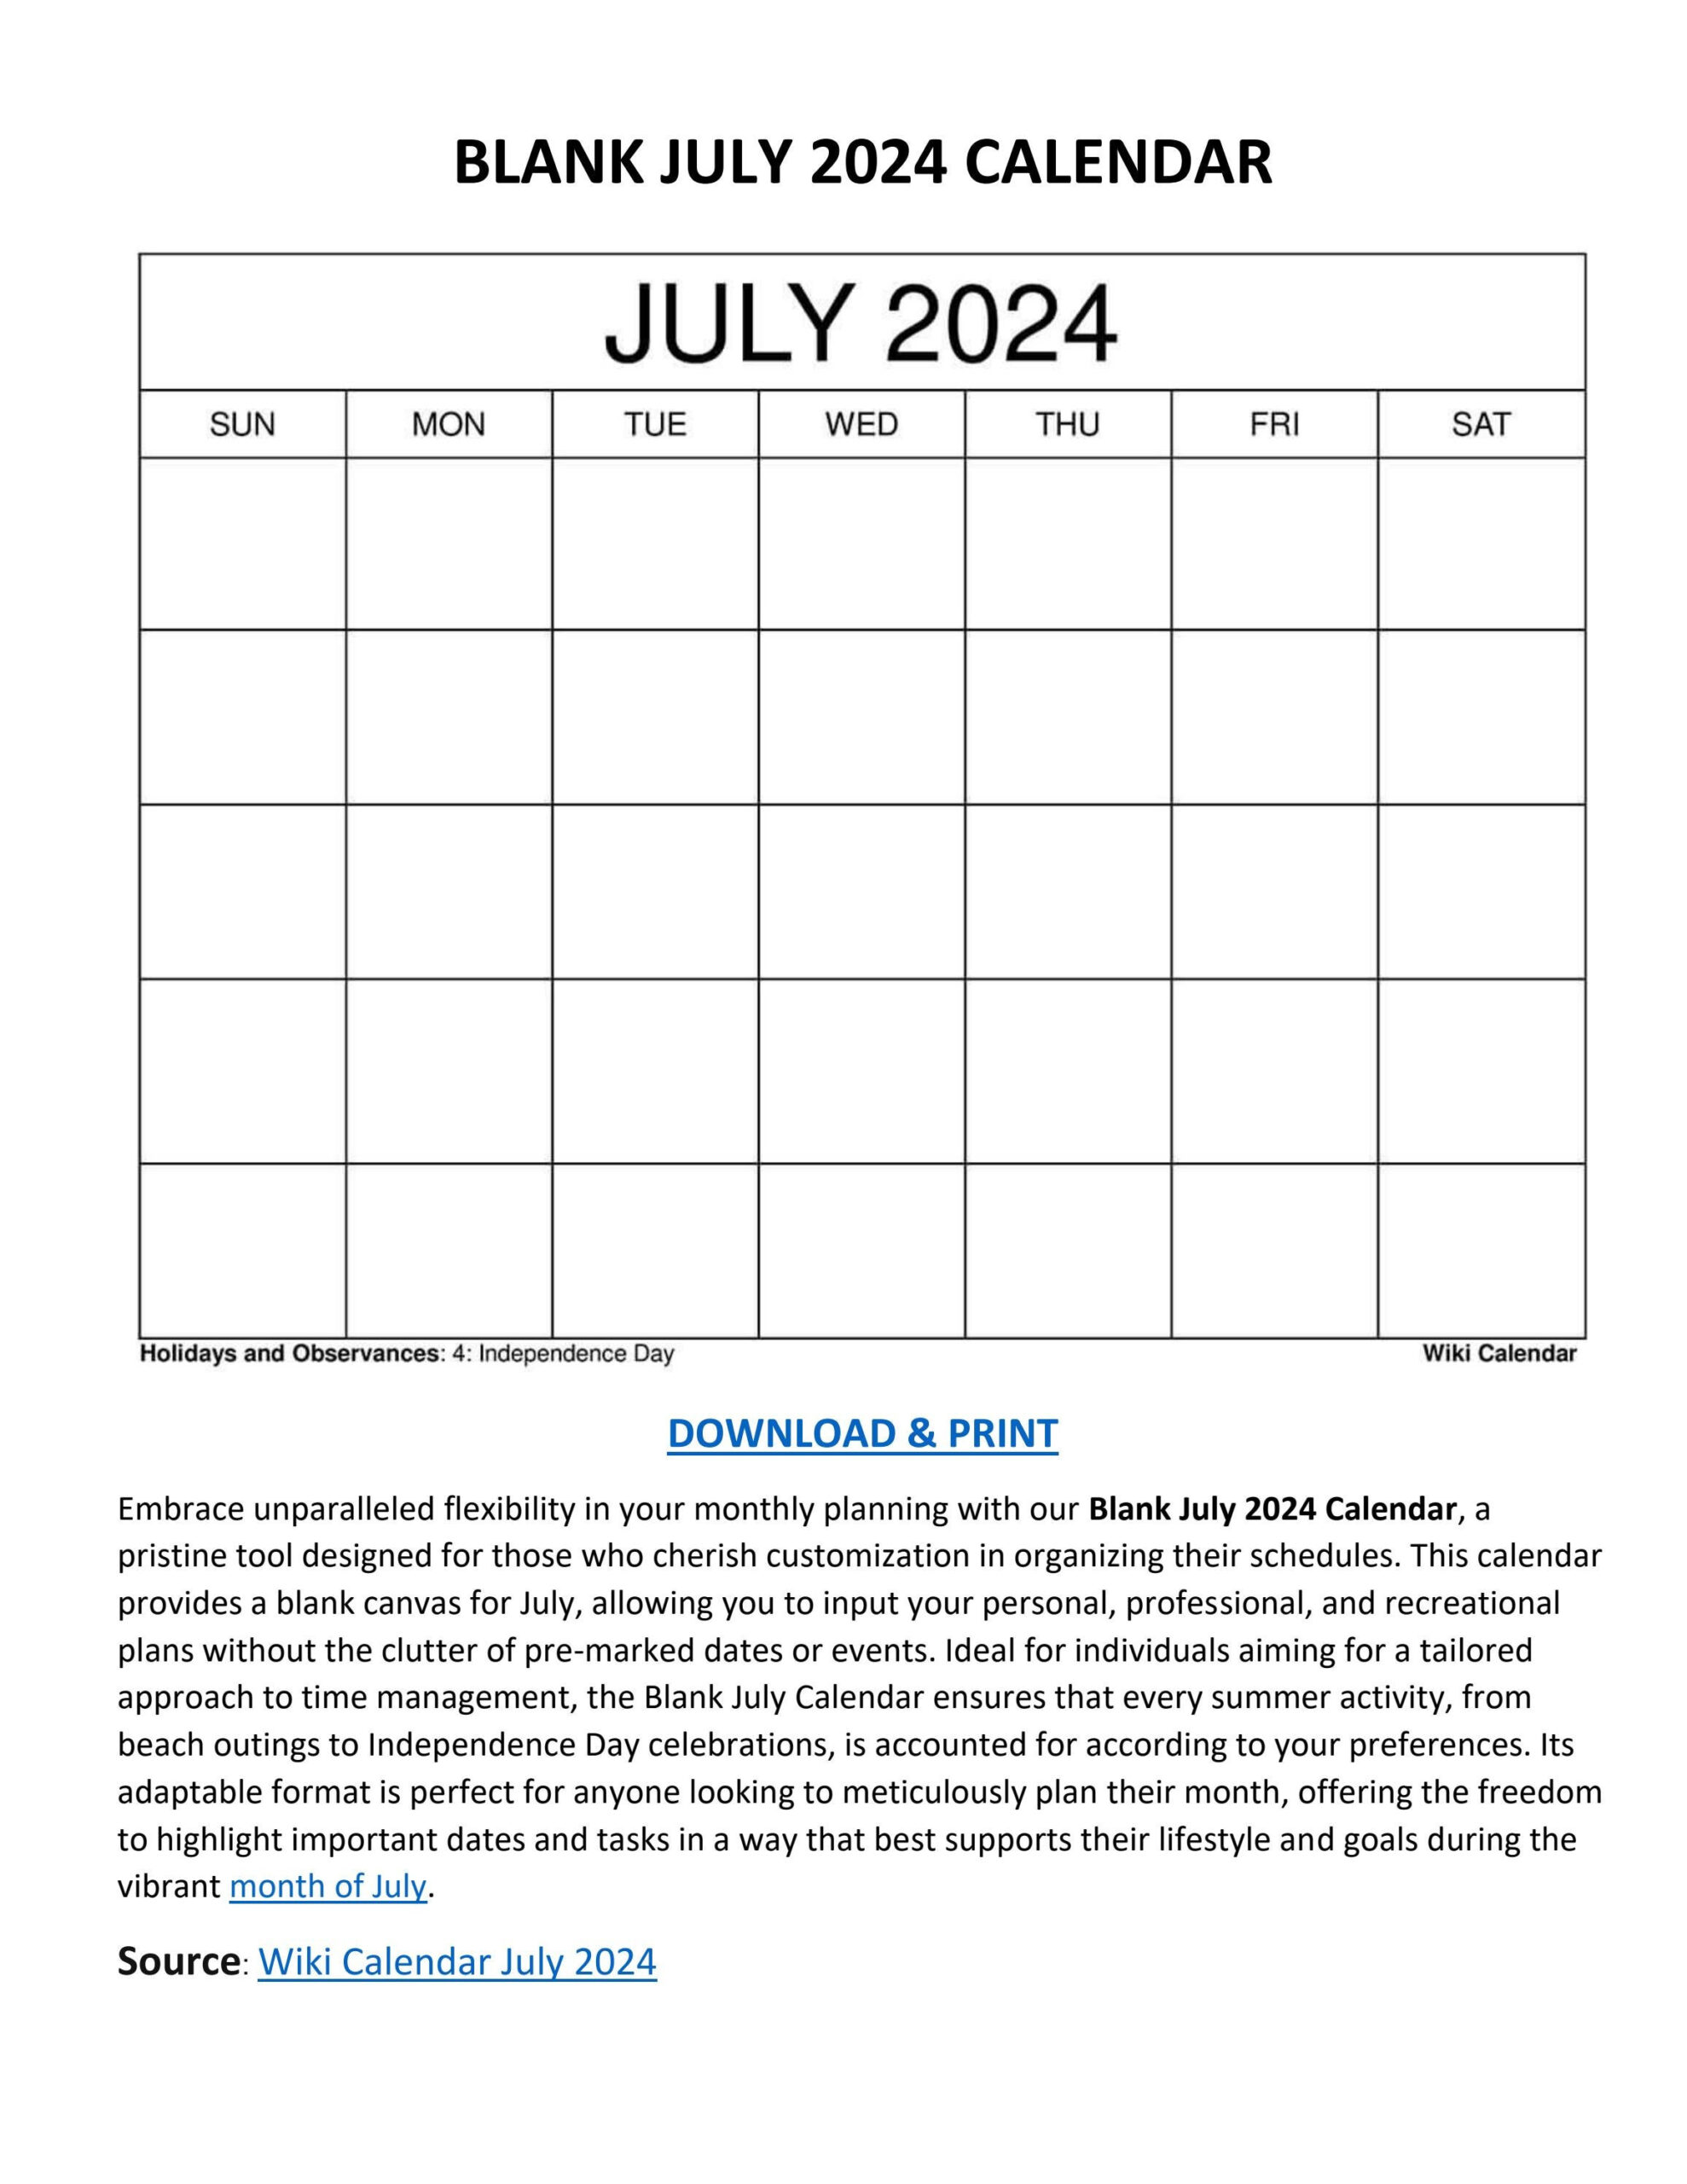 Blank July 2024 Calendar - Wiki Calendarwiki Calendar - Issuu inside July 2024 Calendar Wiki